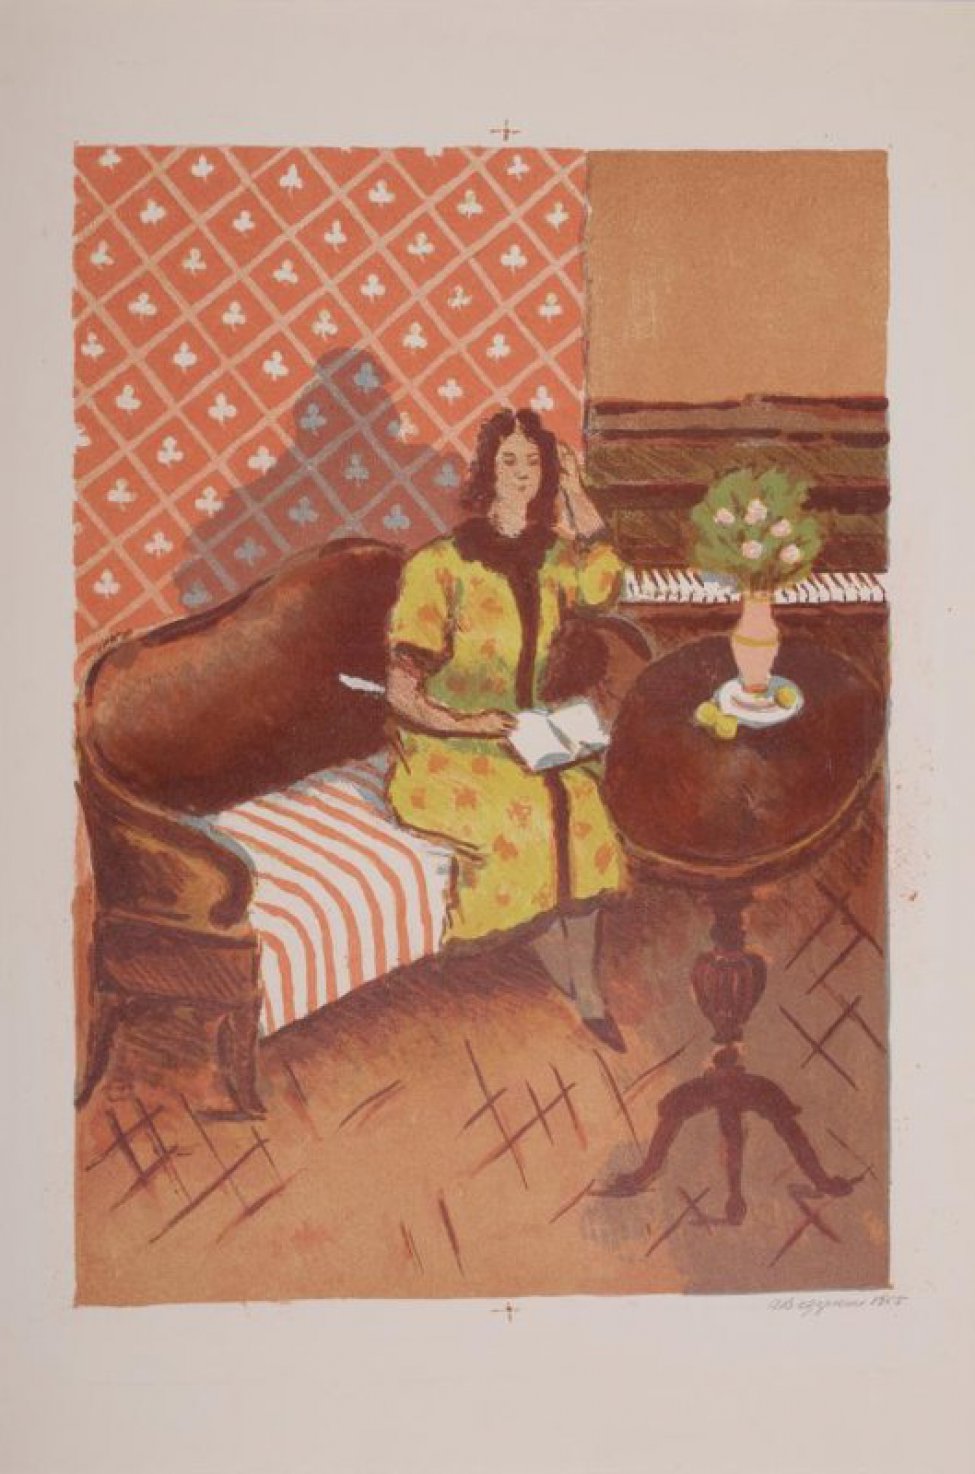 В центре композиции изображена женщина в зеленом халате, сидящая с книгой на диване. Справа-круглый столик с букетом цветов в вазе. На втором плане видно пианино с открытой клавиатурой.